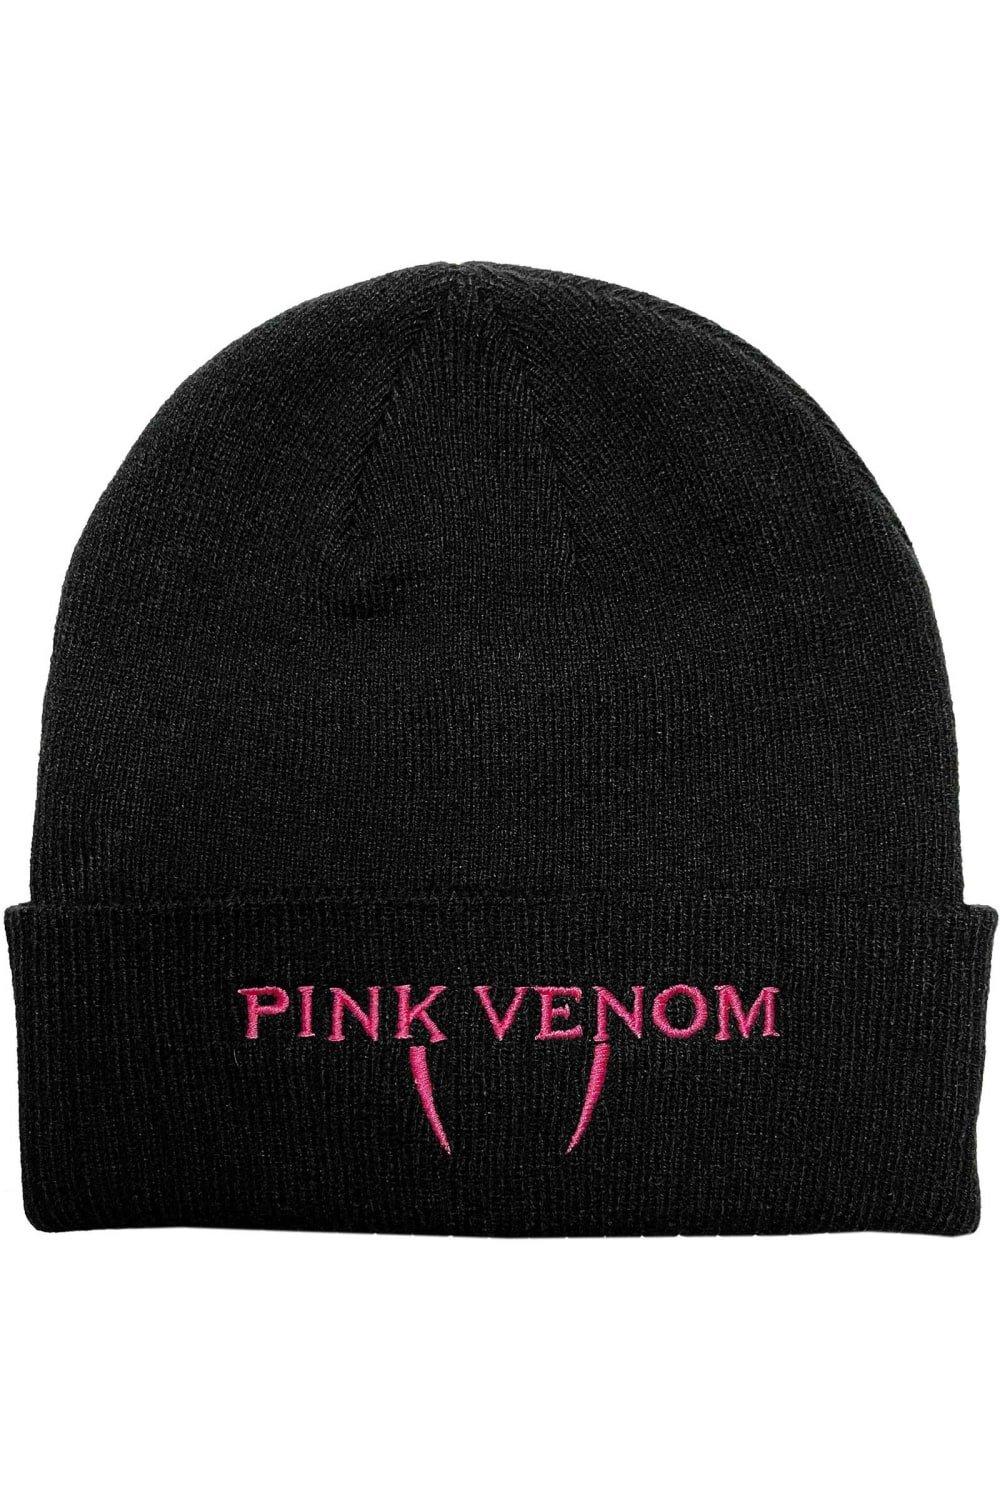 Розовая шапка Venom BlackPink, черный